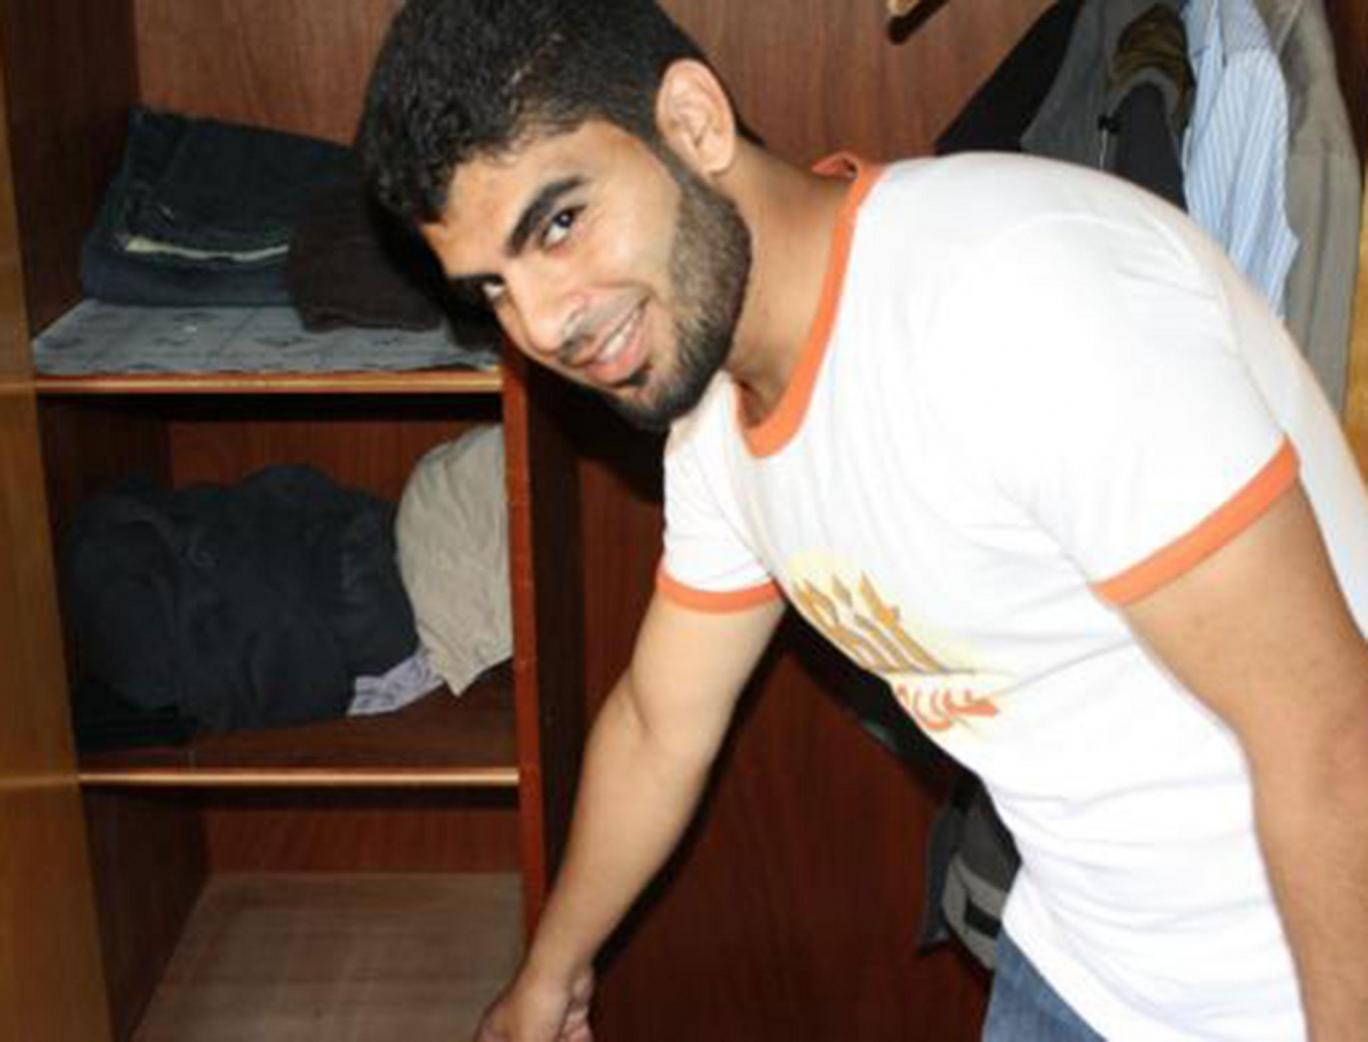 شاب سوري يعثر على مبلغ ضخم في دولاب الملابس